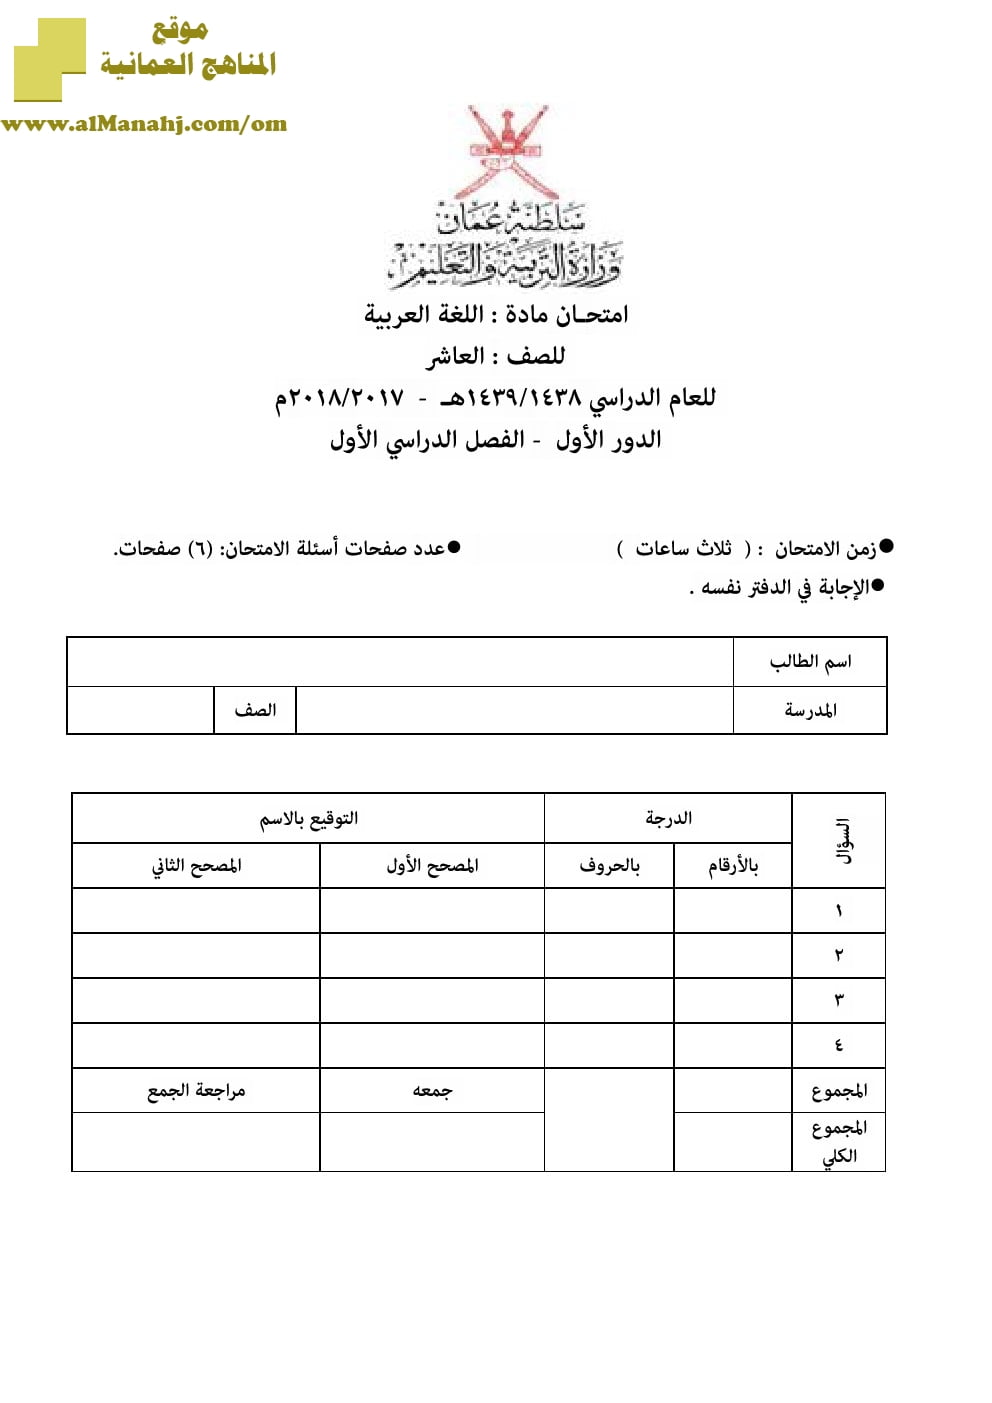 أسئلة وإجابة الامتحان الرسمي الدور الأول والثاني (لغة عربية) العاشر